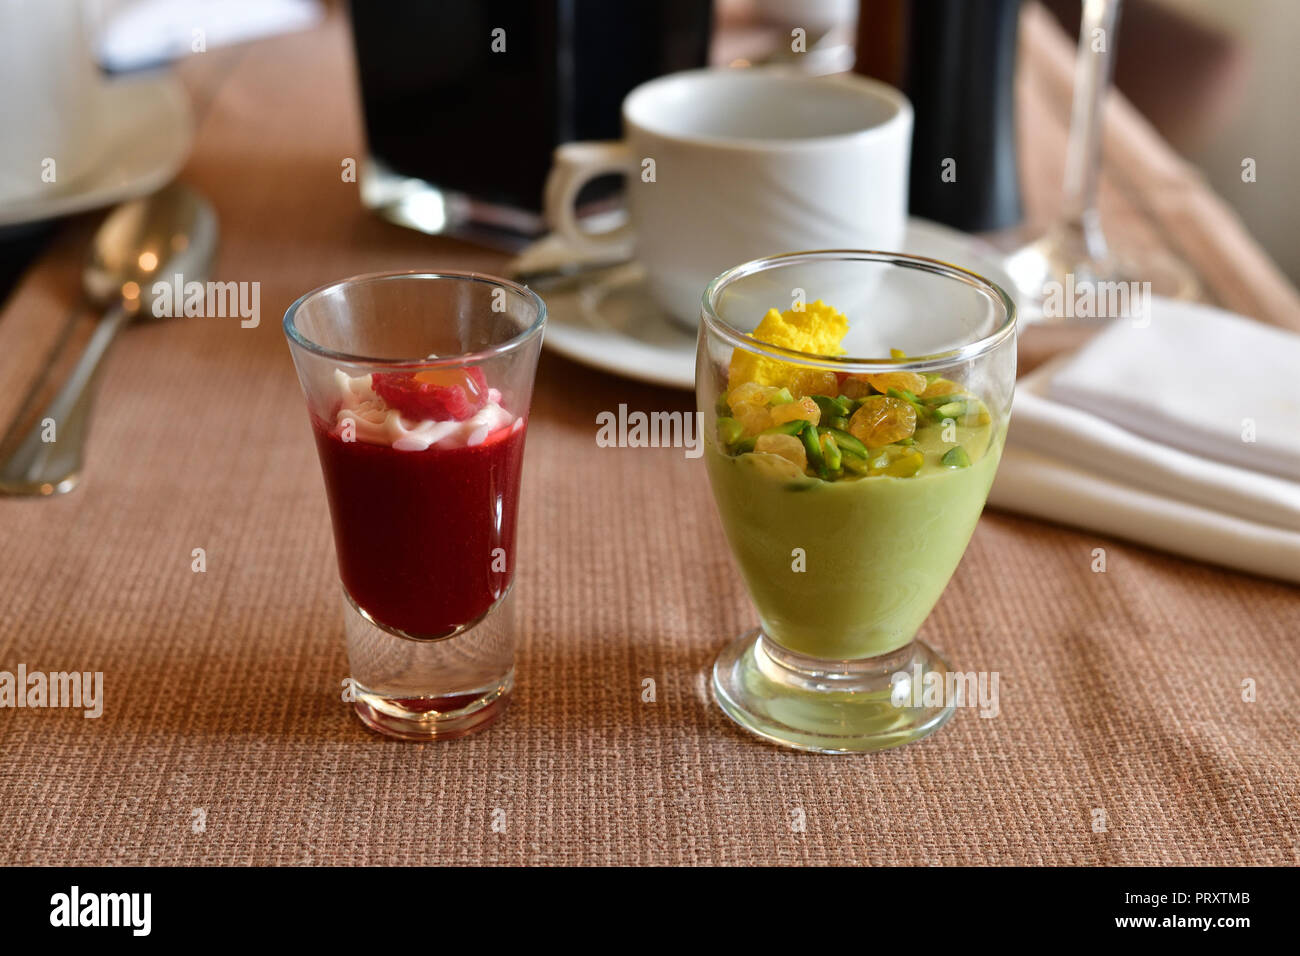 Lampone e pistacchio souffle con uvetta nella porzione bicchieri Foto Stock